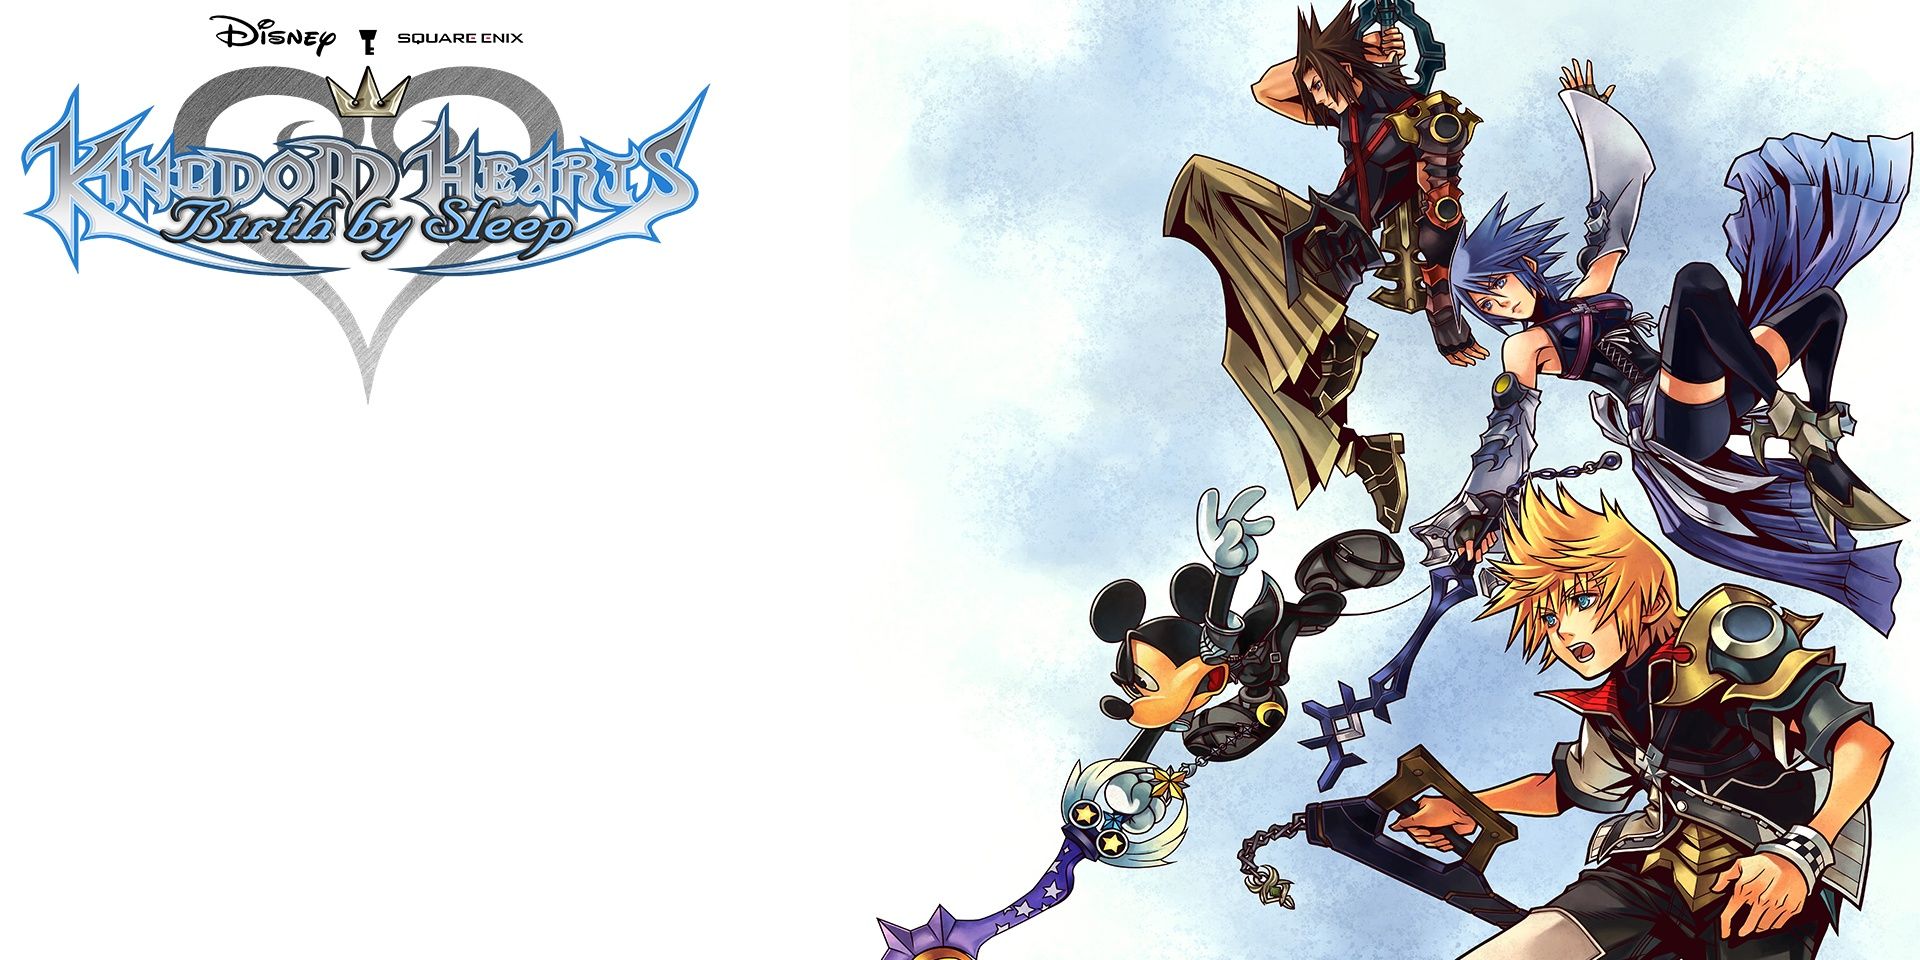 Das Cover von „Birth By Sleep“ von Kingdom Hearts zeigt Ventus, Terra und Aqua neben Mickey Mouse, die ihre Schlüsselschwerter halten